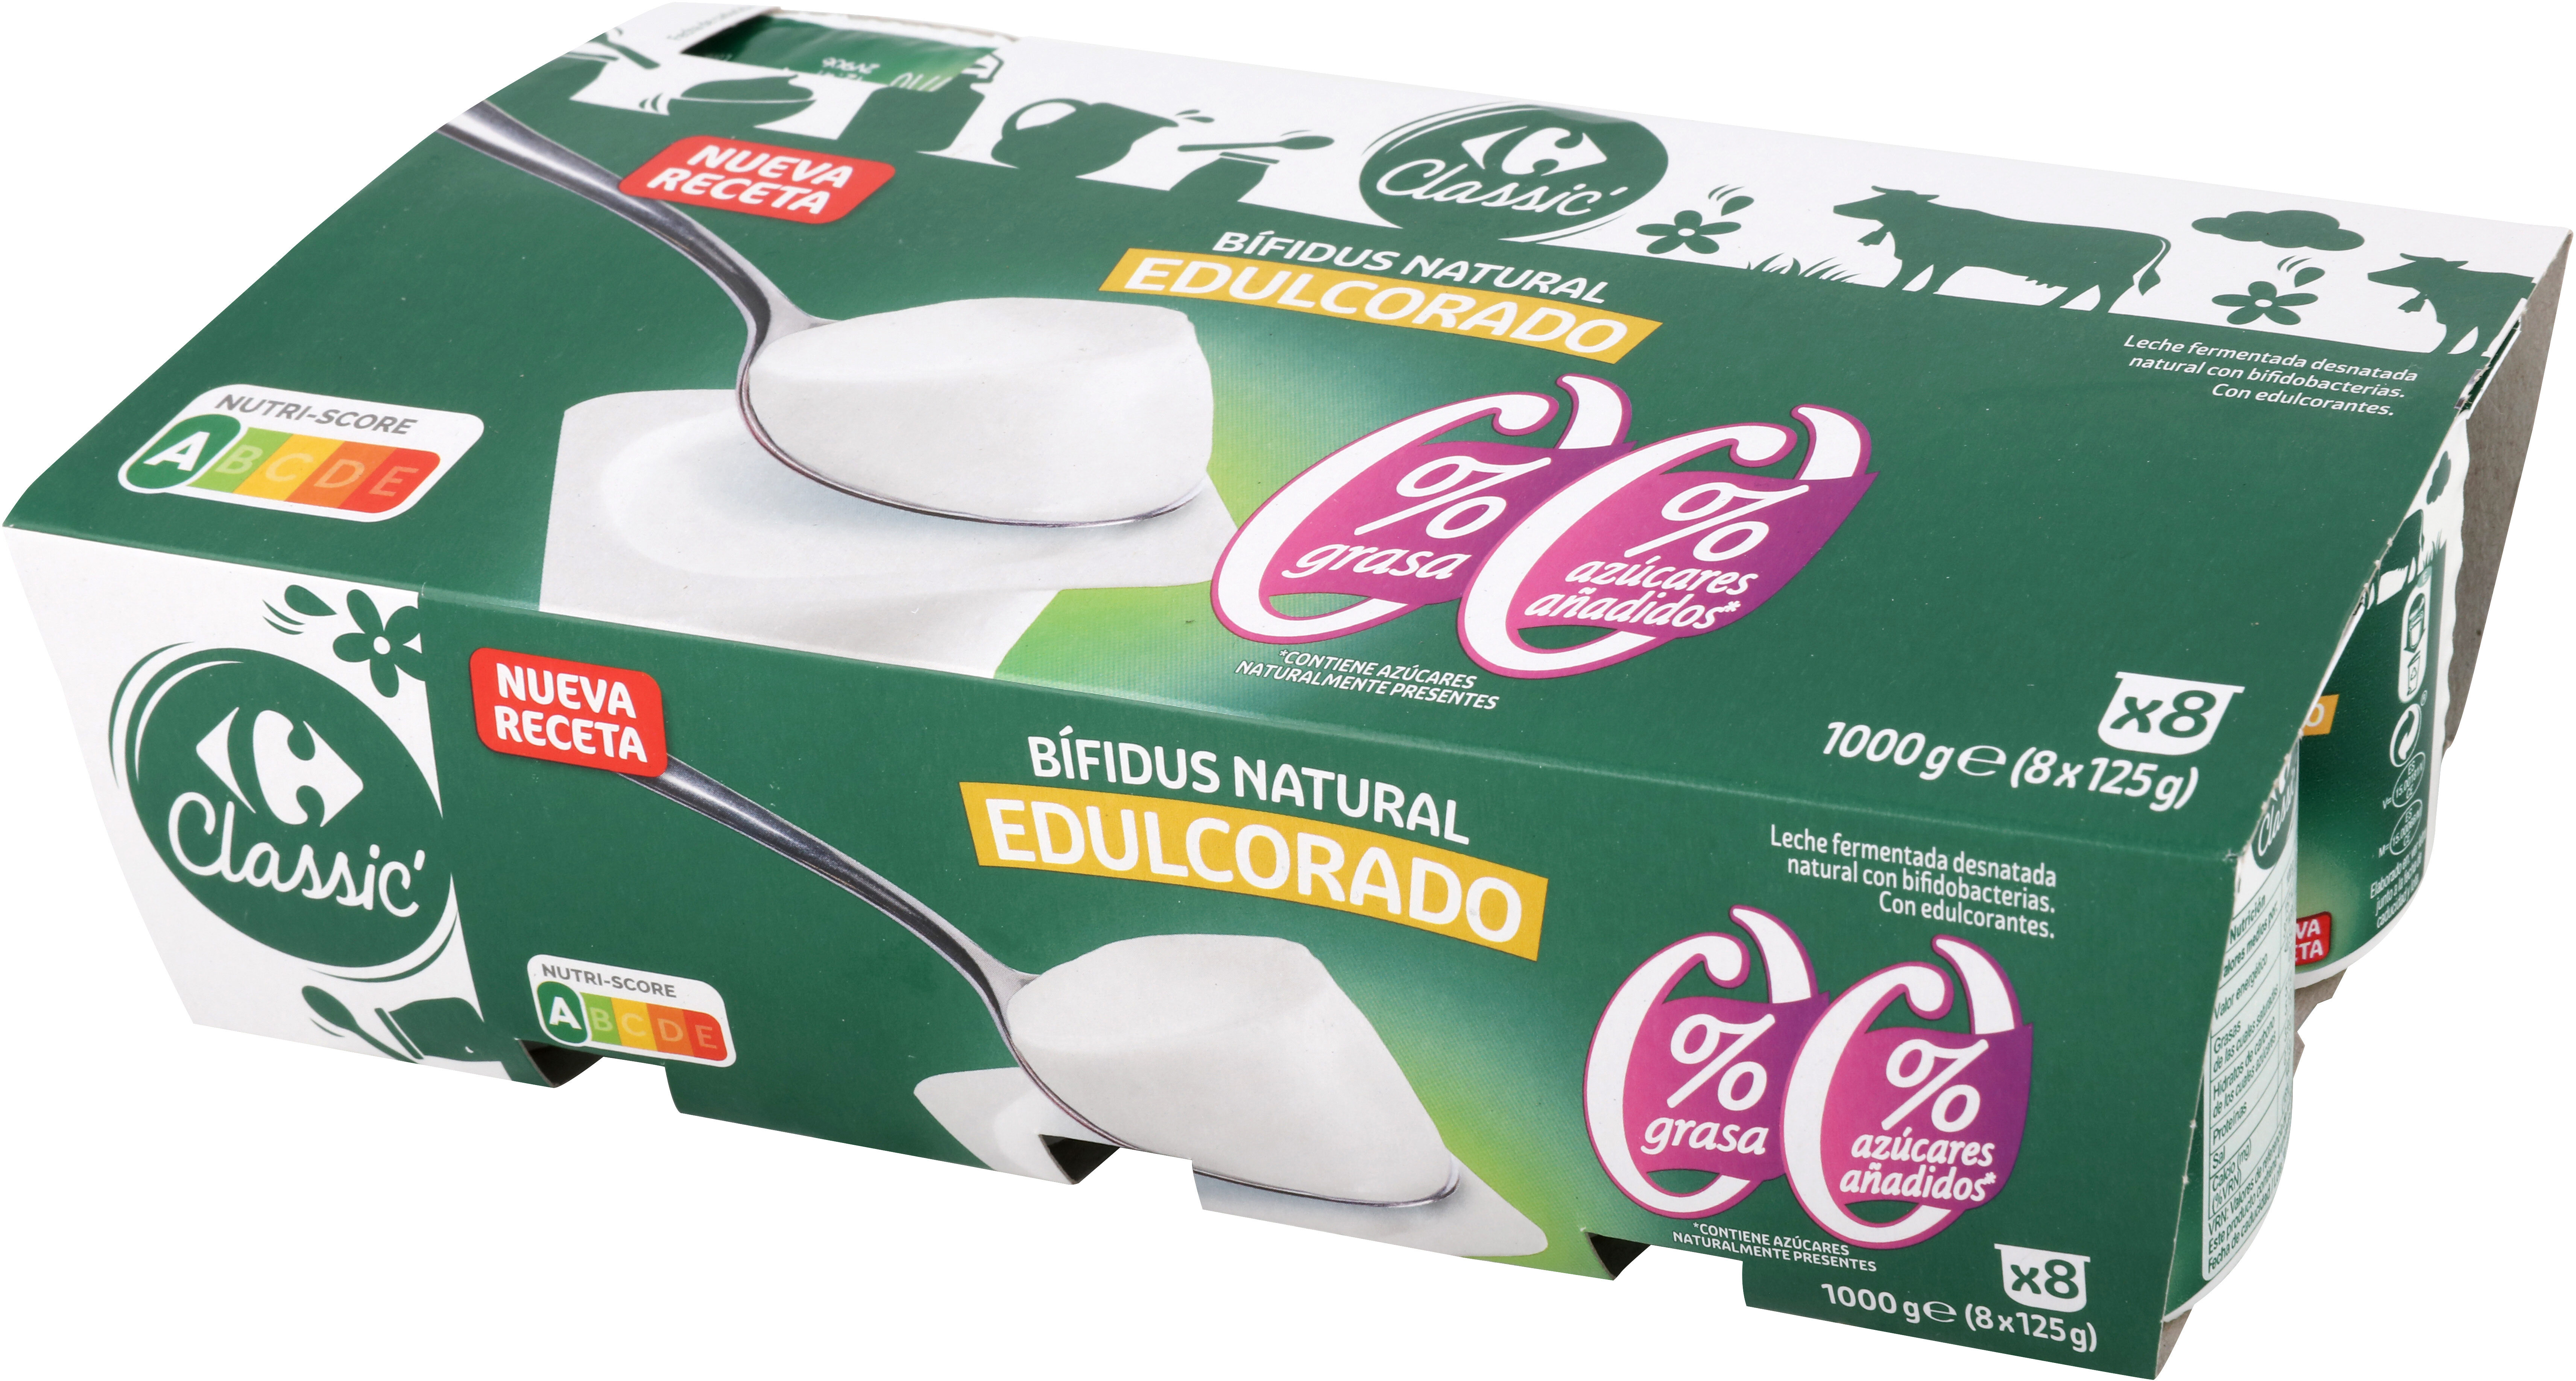 Bifidus Natural Edulcorado 00% - Producto